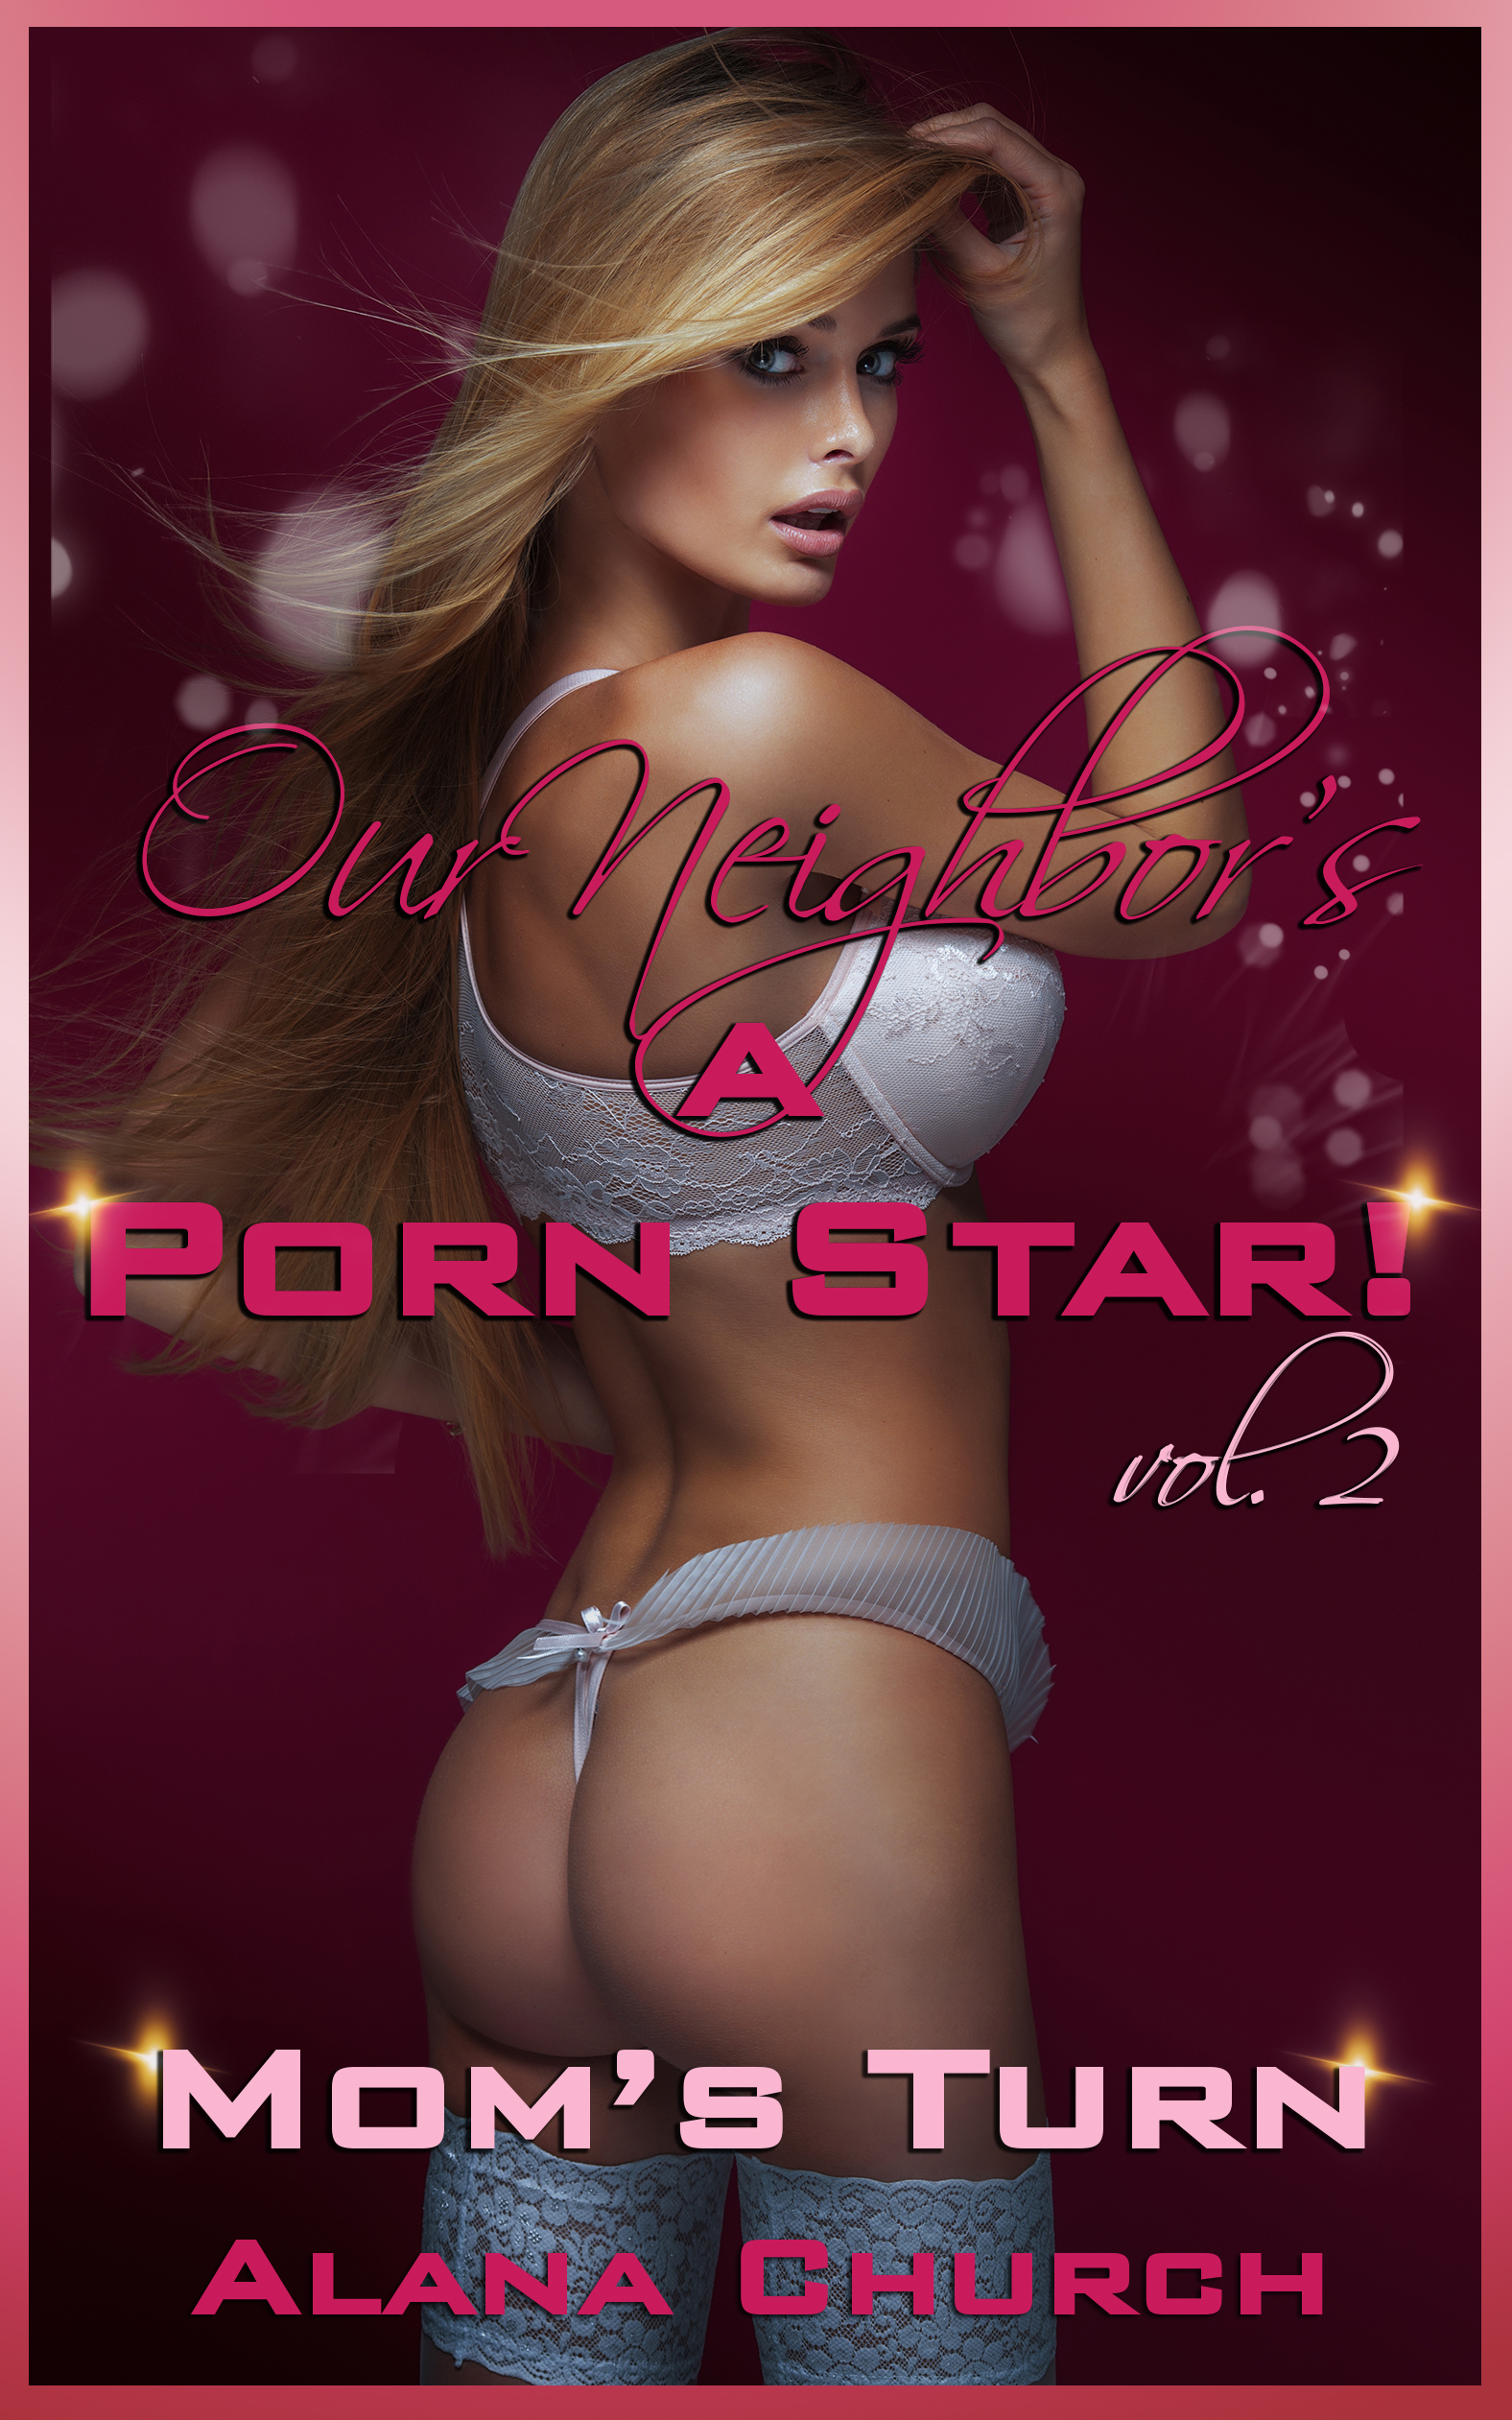 Erotic Mom Porn - Our Neighbor's A Porn Star #2 - Mom's Turn, an Ebook by Alana Church